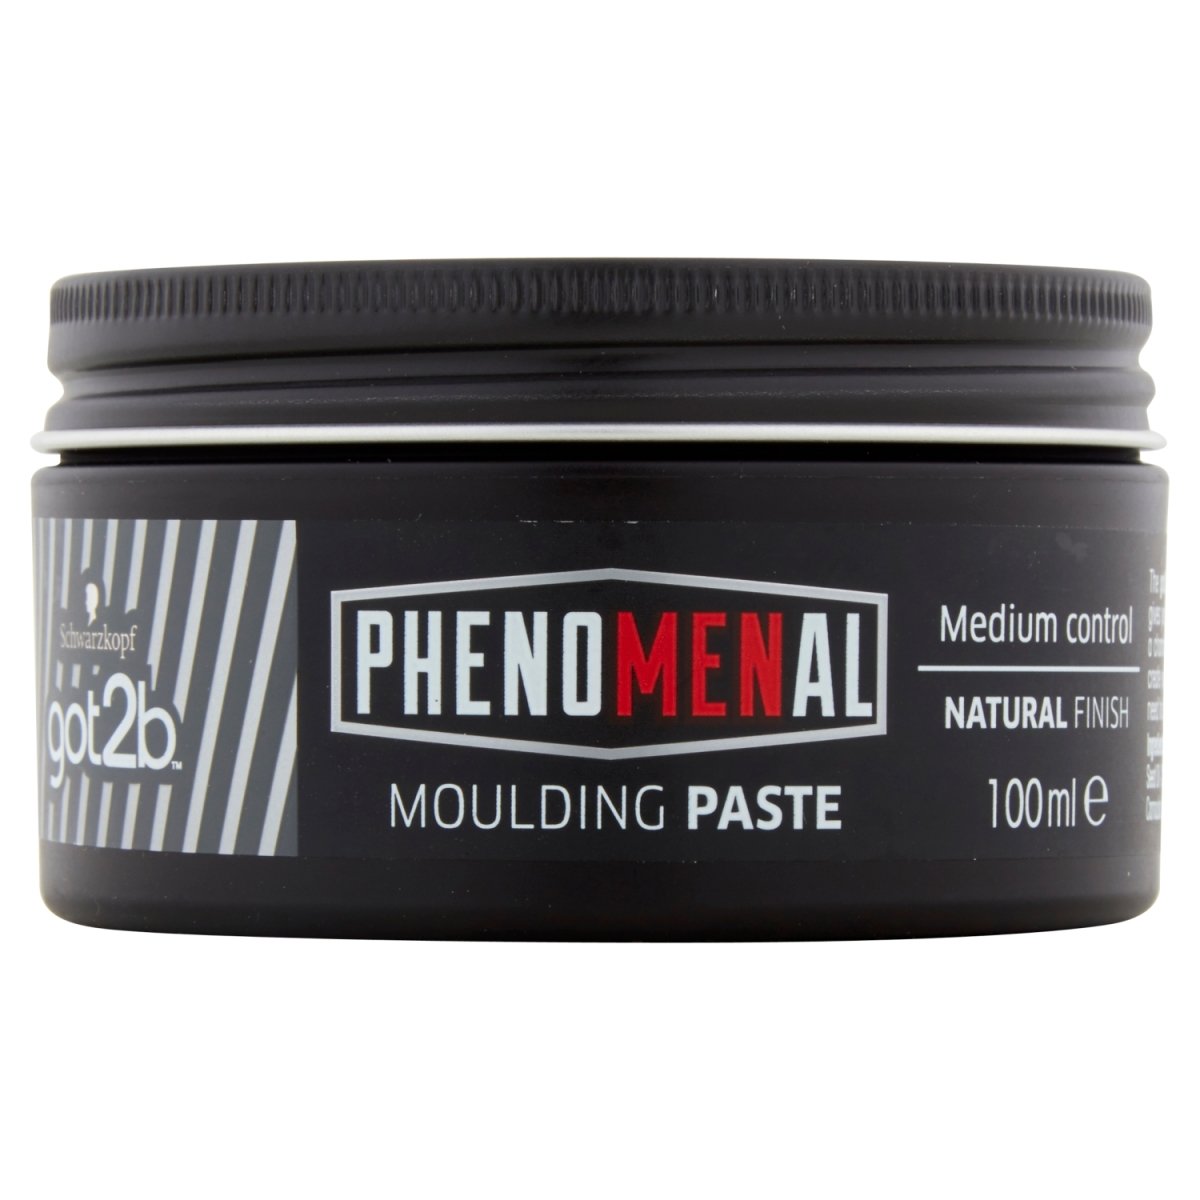 Got2b PhenoMENal Moulding Paste - Intamarque 5012583204398